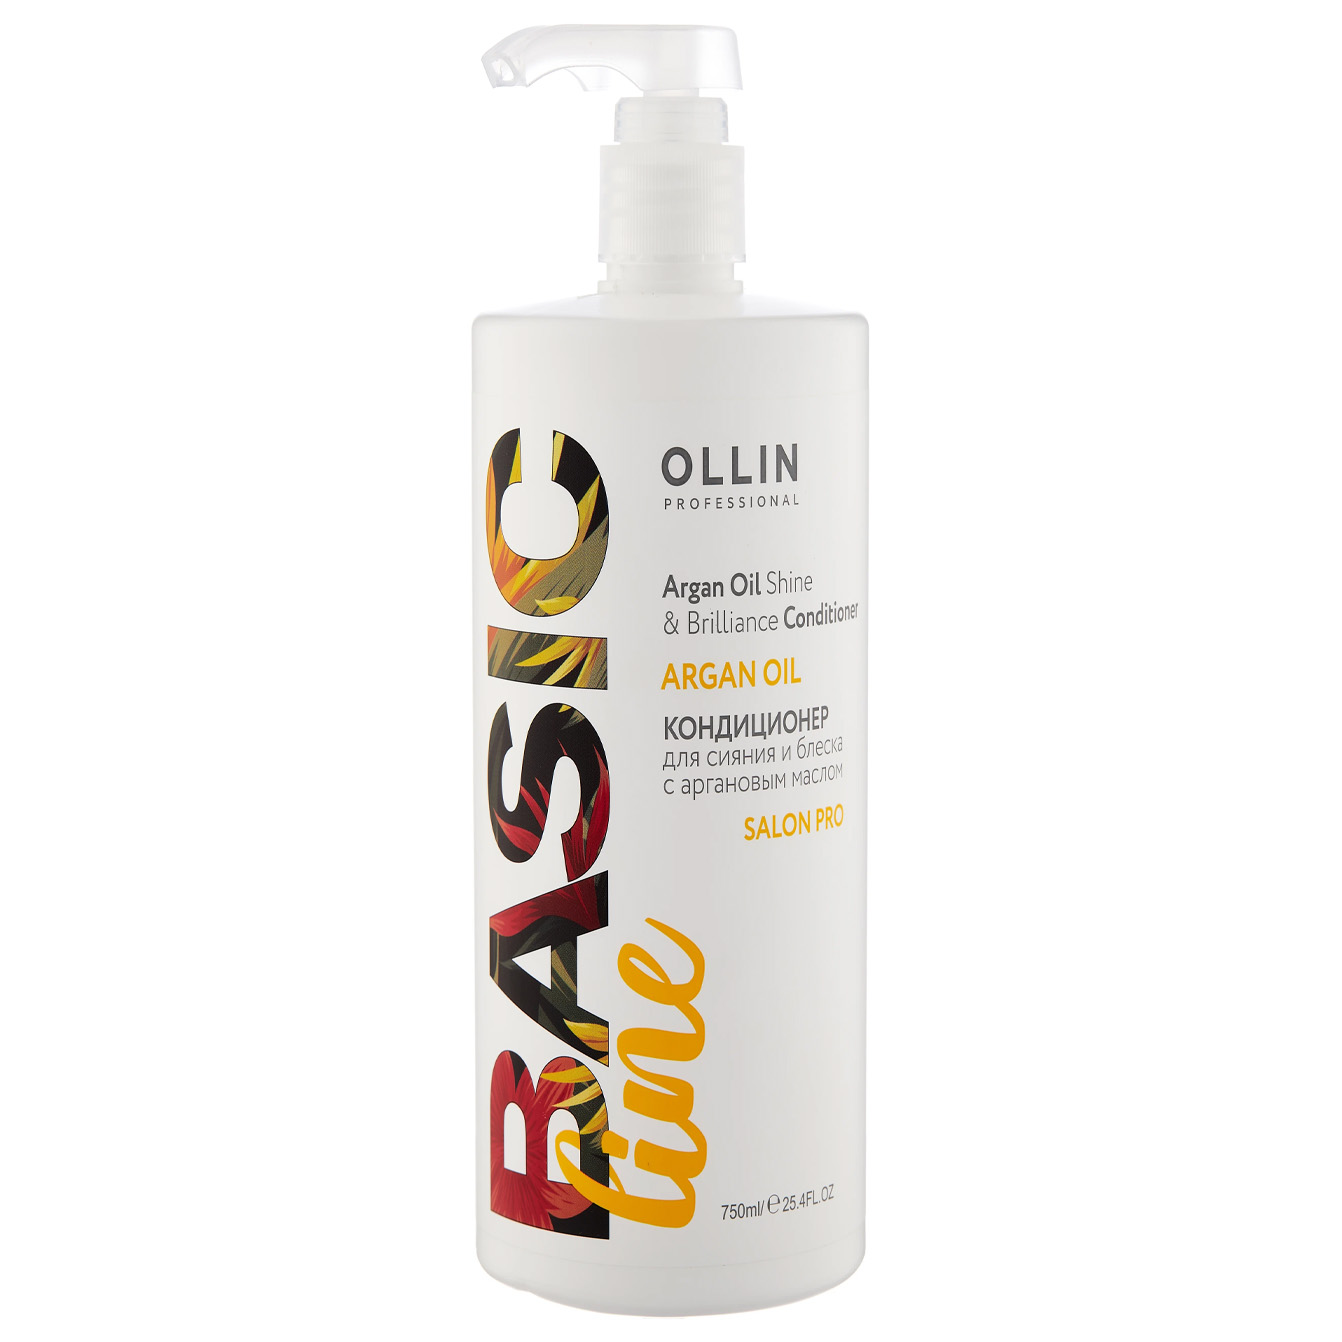 Кондиционер для волос OLLIN PROFESSIONAL Basic Line с аргановым маслом, 750 мл ollin professional кондиционер для сияния и блеска с аргановым маслом ollin basic line